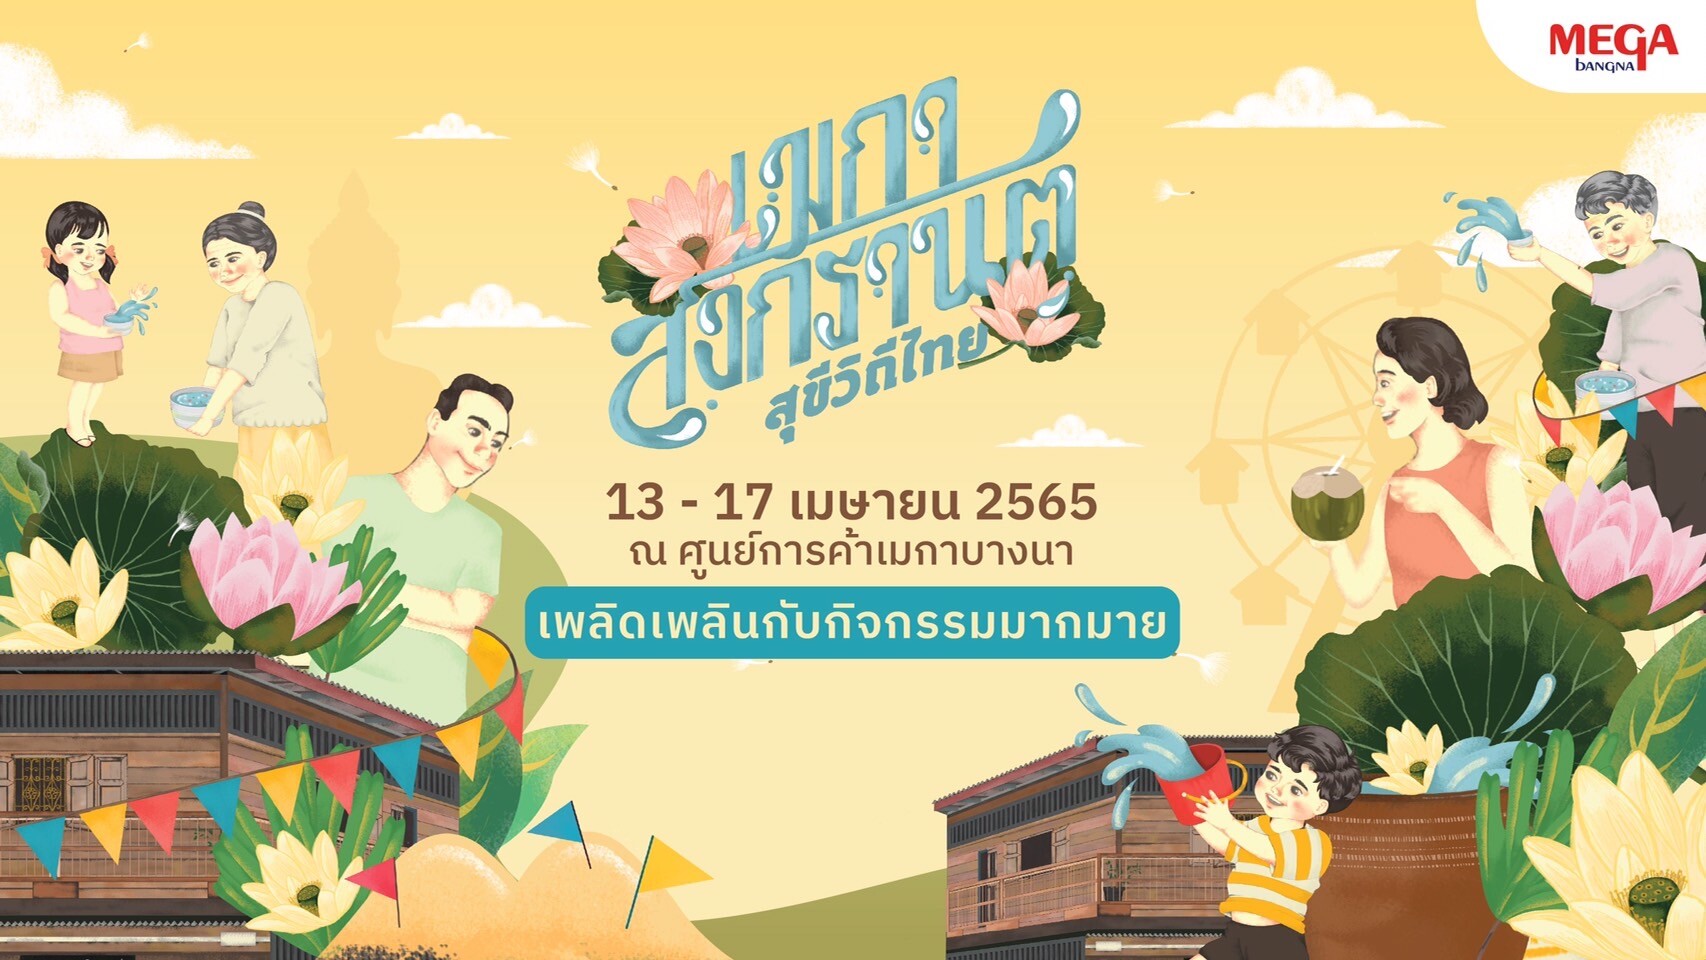 เมกาบางนา ชวนคุณย้อนเวลาสัมผัสความสุขวิถีไทย  ในงาน "เมกา สงกรานต์ สุขีวิถีไทย" ตั้งแต่วันที่ 13 - 17 เมษายน 2565